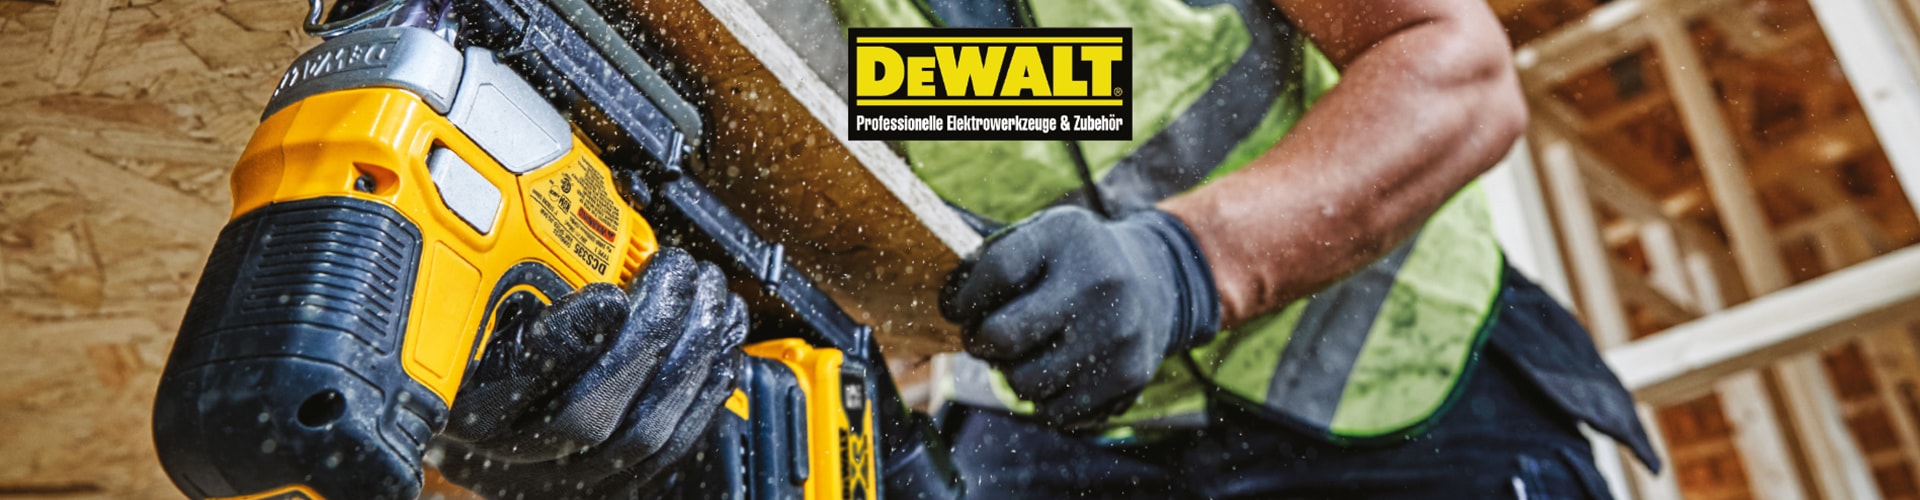 DeWalt Elektrowerkzeuge von DEXIS Austria für Profis